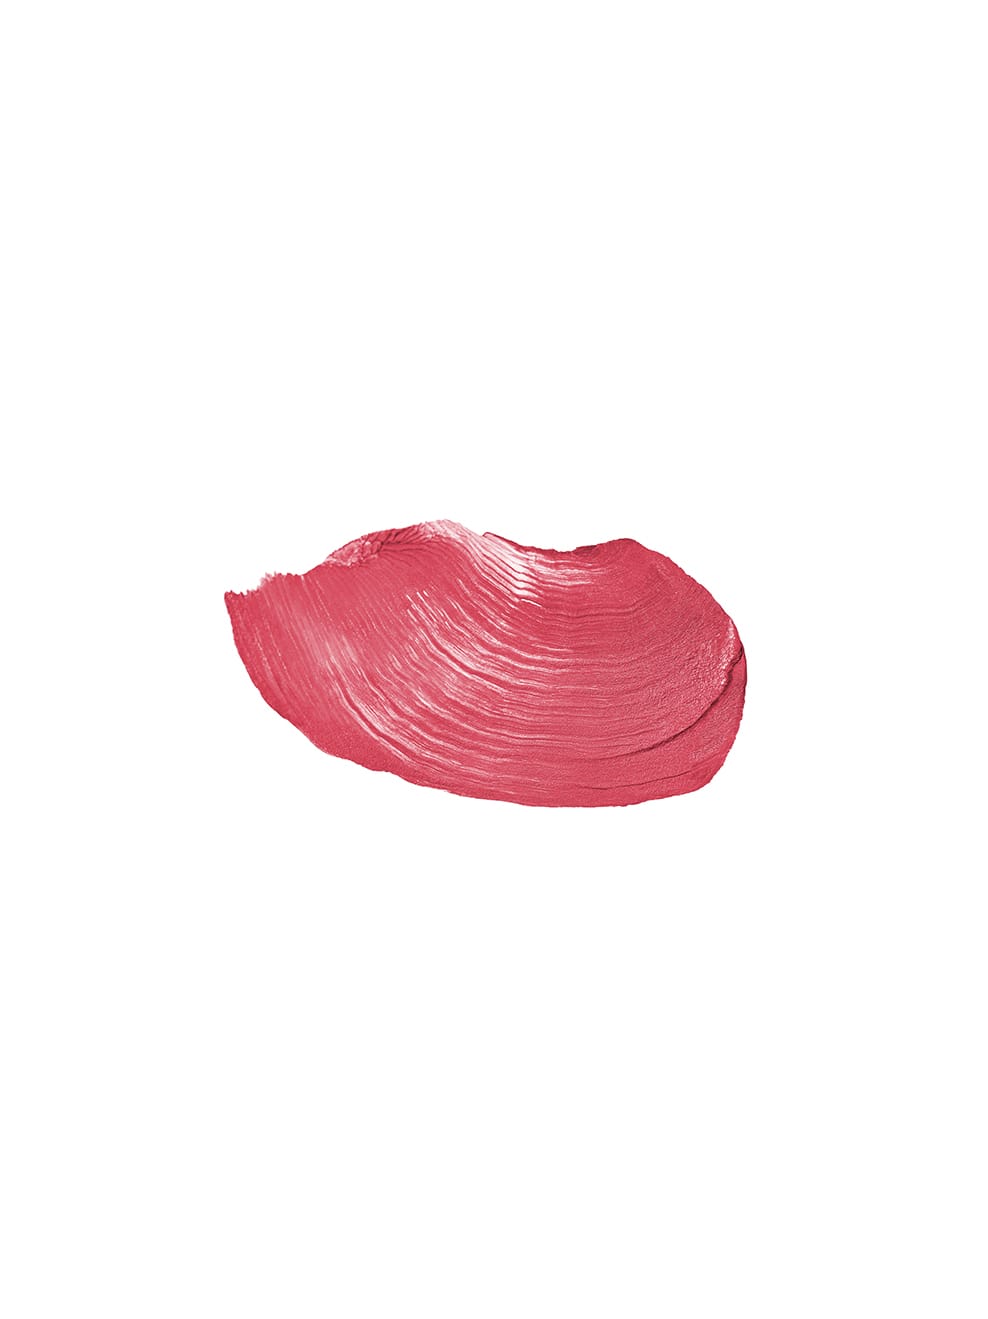 TAGAROT – natürlicher Lippenstift Lipstick | UND GRETEL GRETEL Berlin | | UND